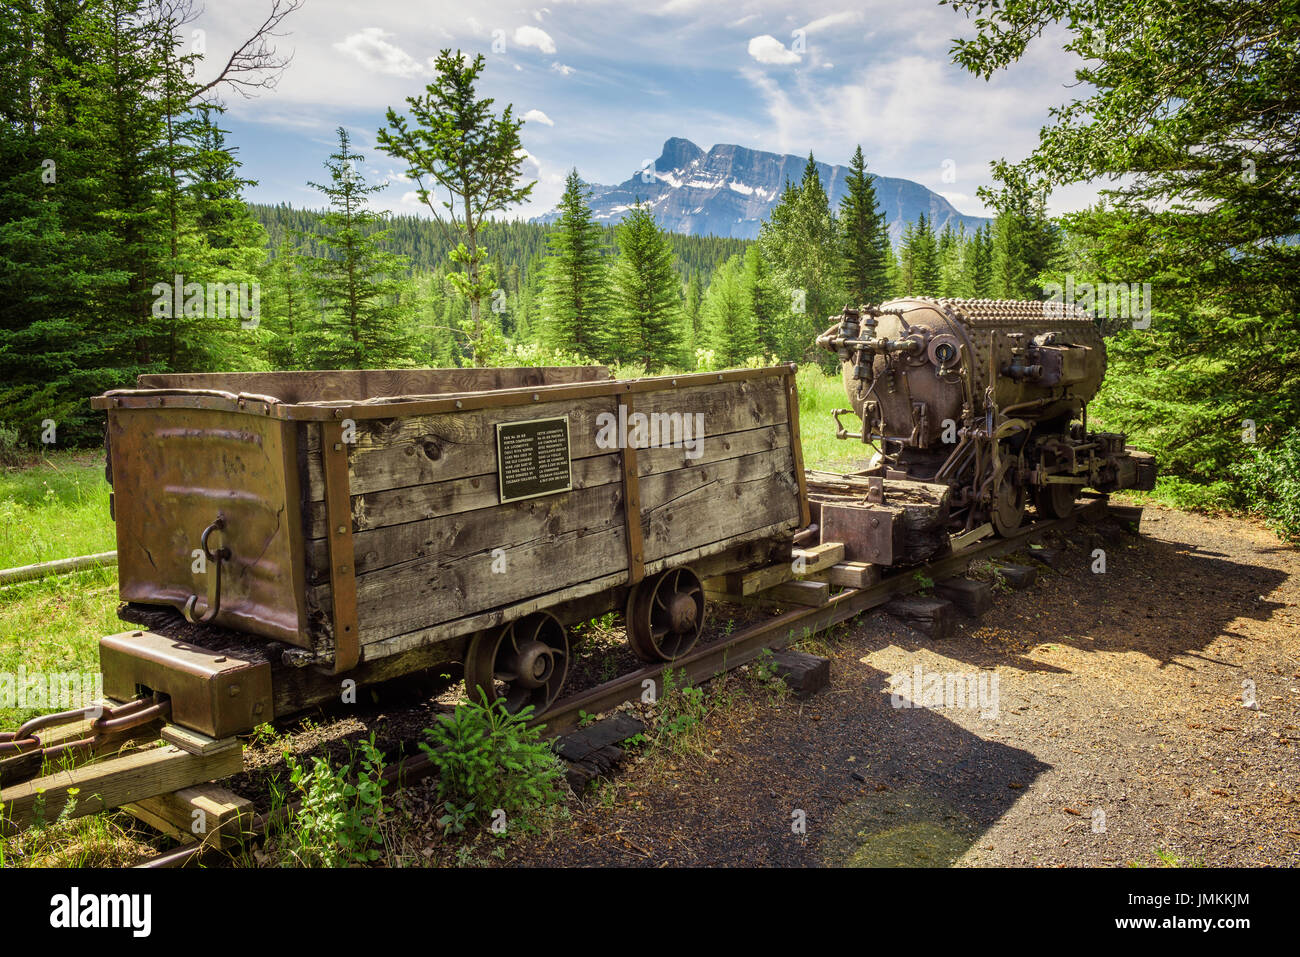 Storica miniera di carbone treno nella città fantasma di Bankhead con Mt. Rundle in background si trova nel Parco Nazionale di Banff, Alberta, Canada. Foto Stock